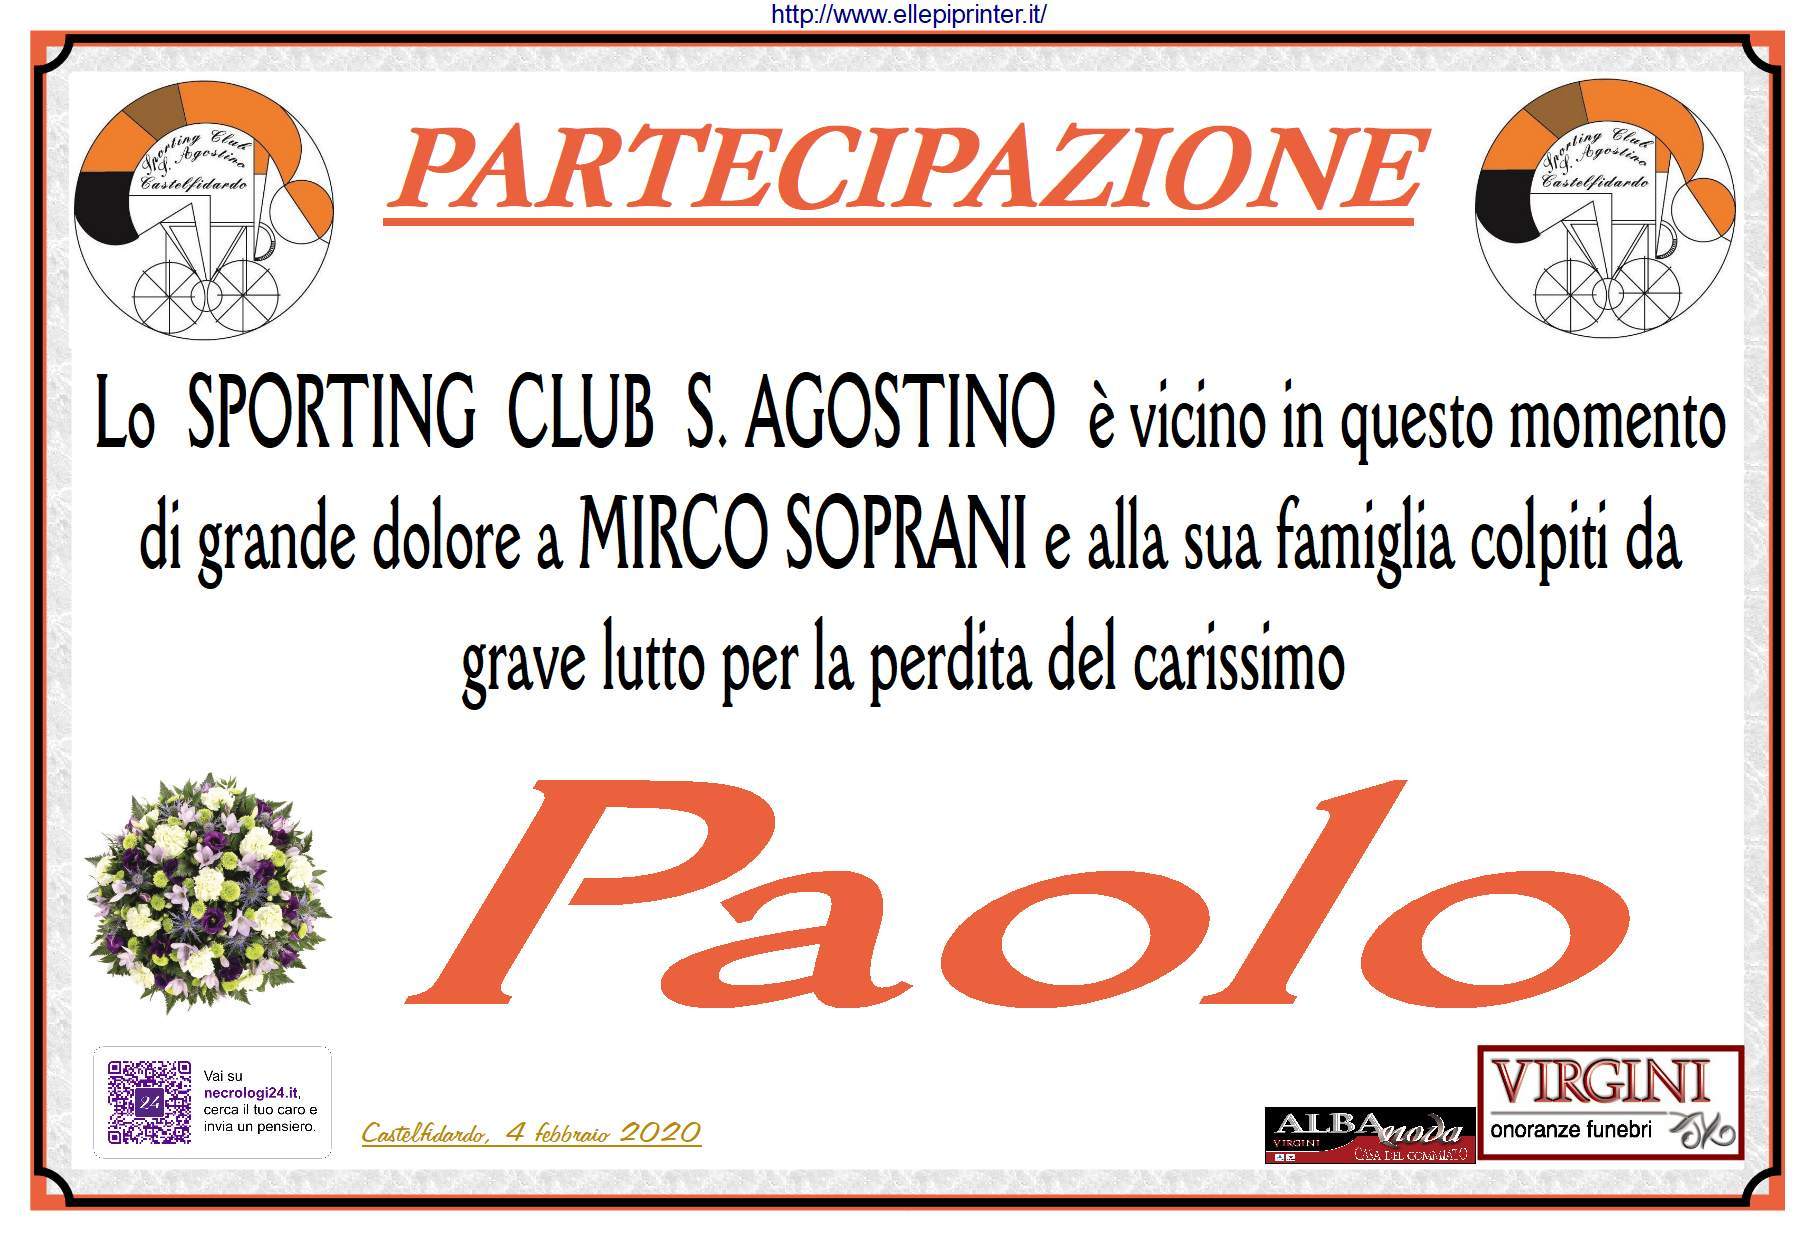 Lo Sporting Club S. Agostino